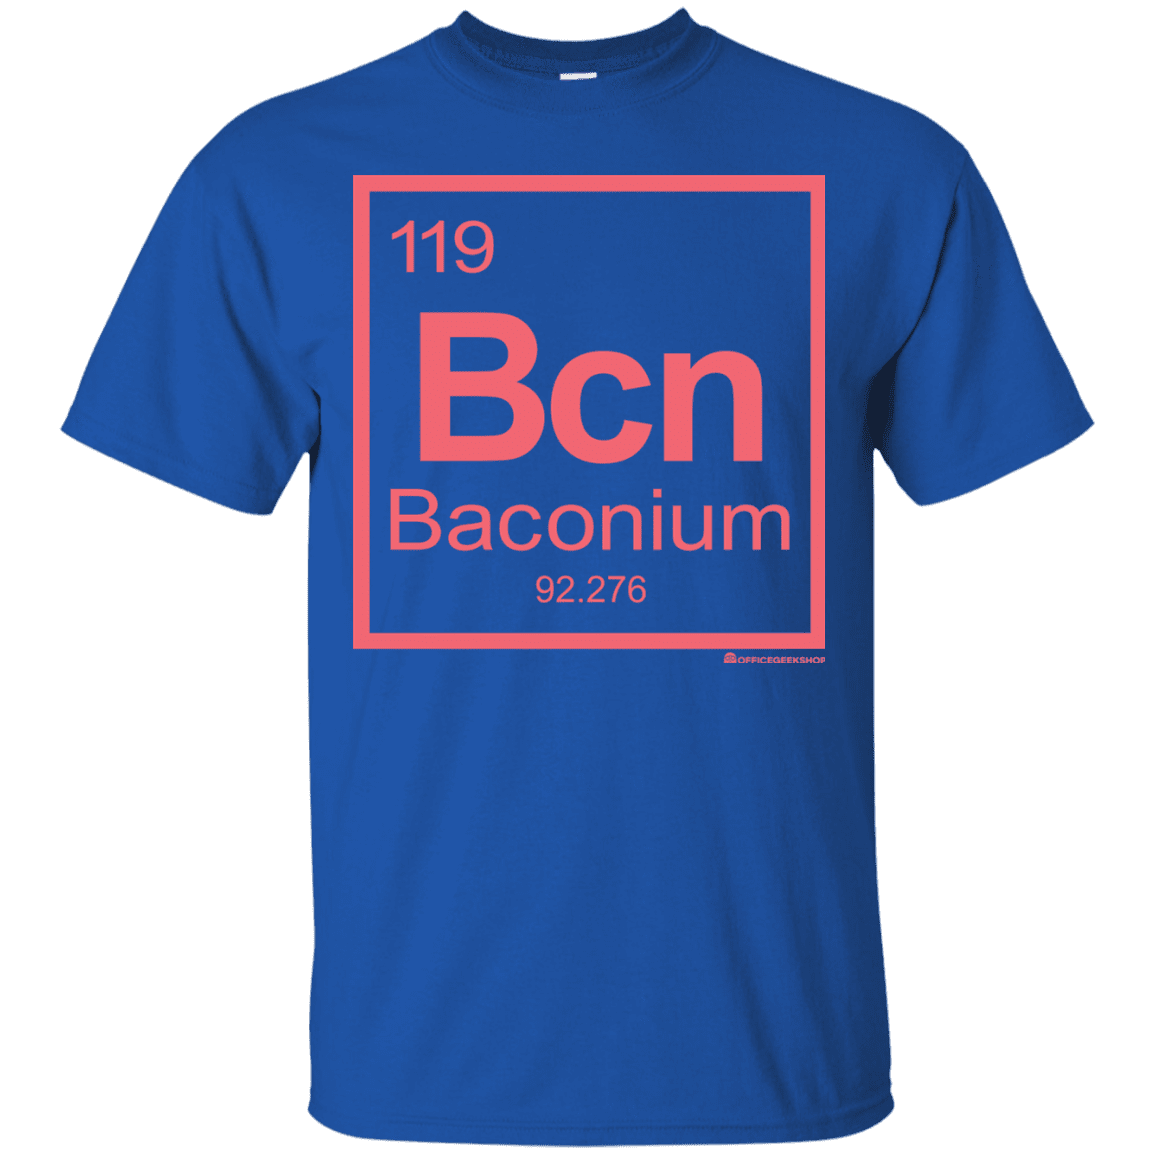 T-Shirts Royal / Small Baconium T-Shirt